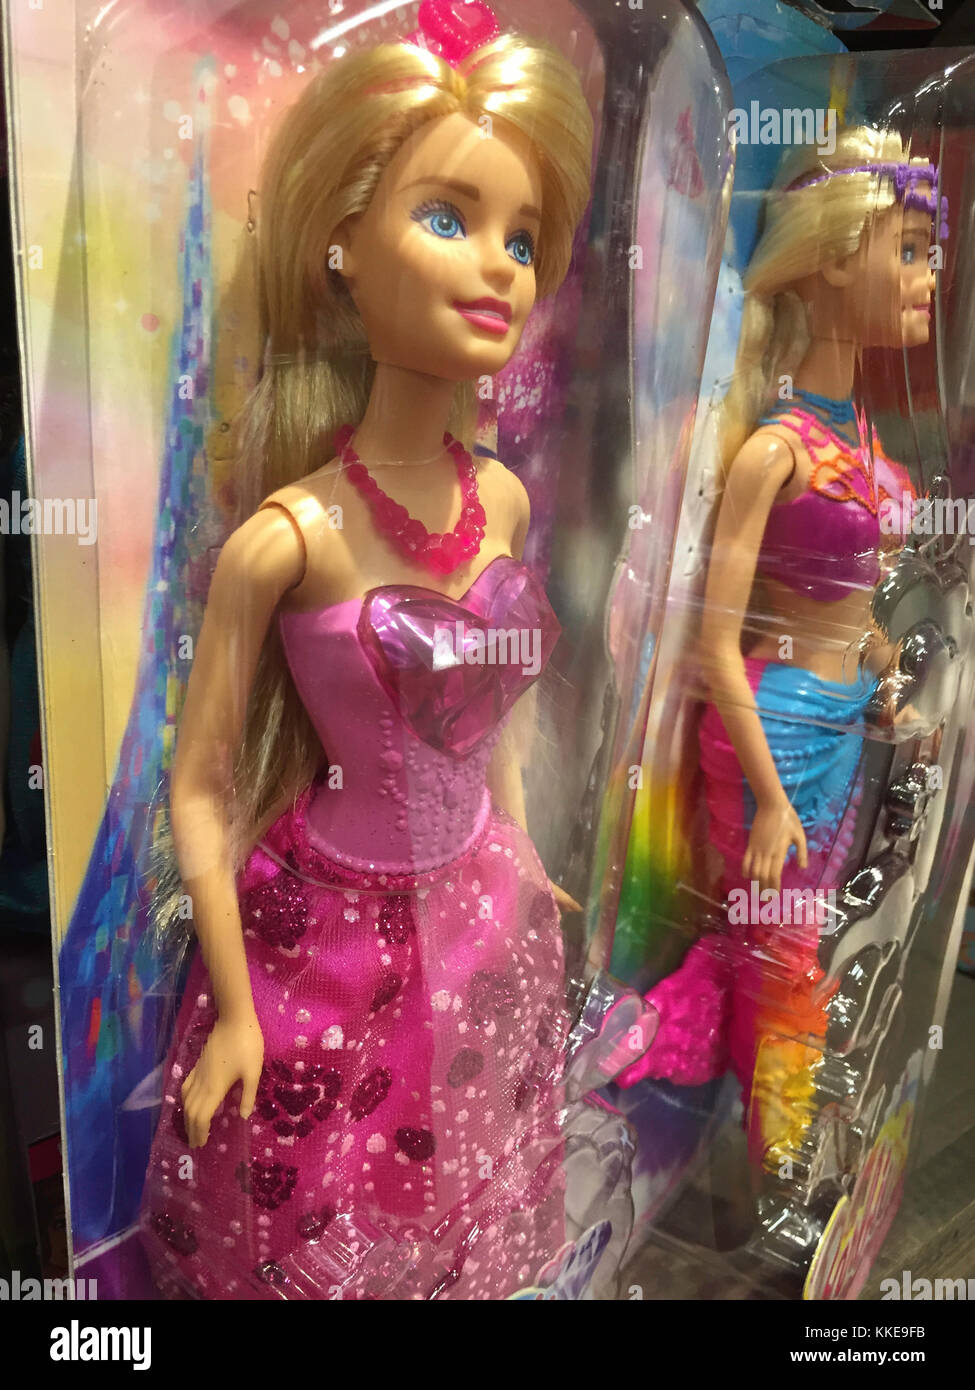 Barbie Doll Display, USA Stock Photo - Alamy